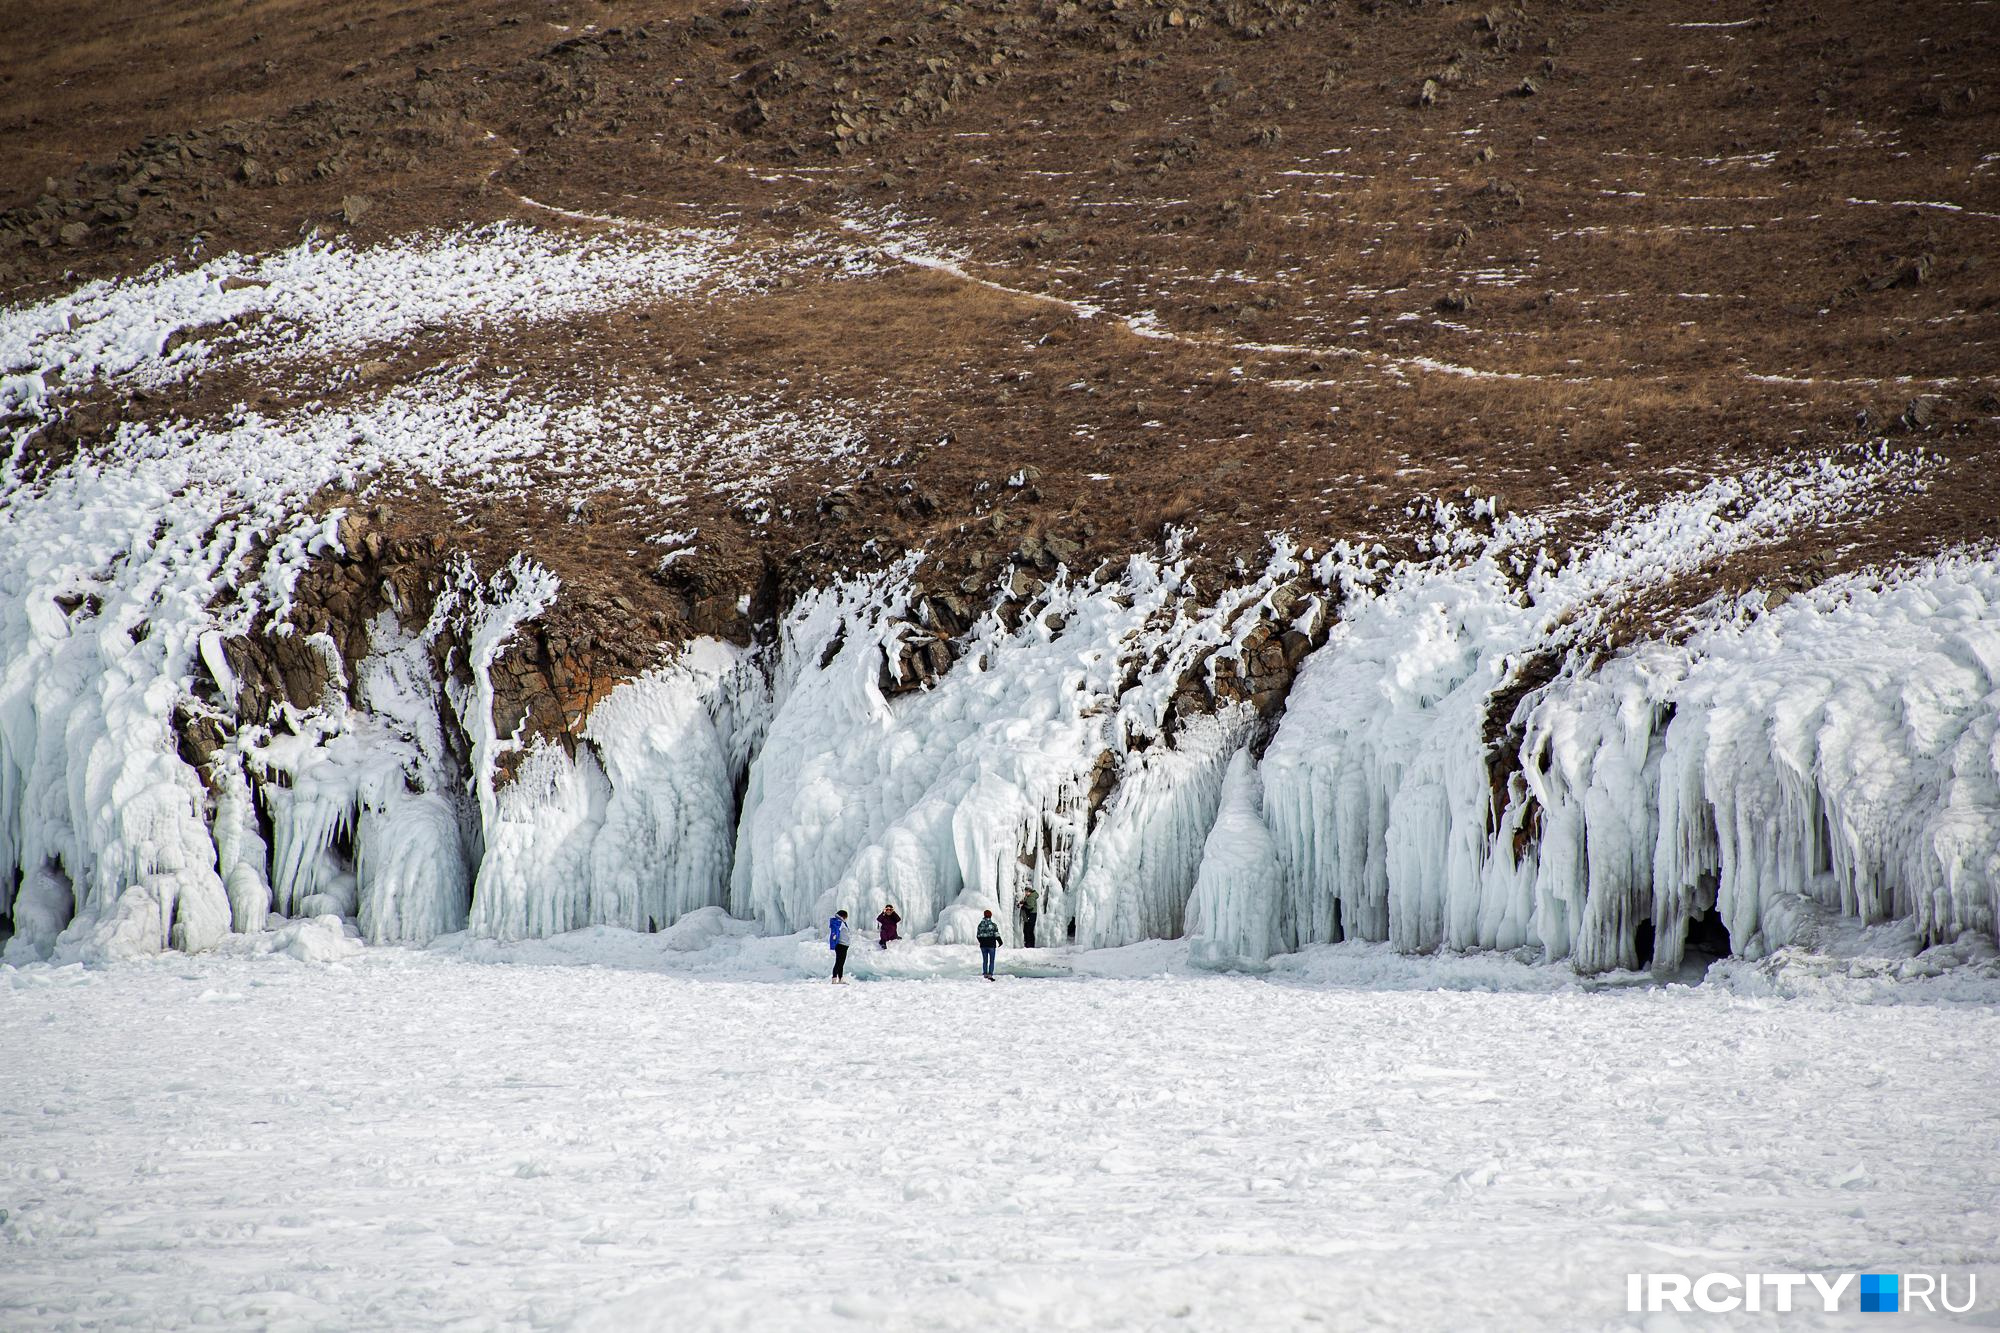 Ледяные пещеры с наплесками — то, что привлекает многих туристов на Ольхоне